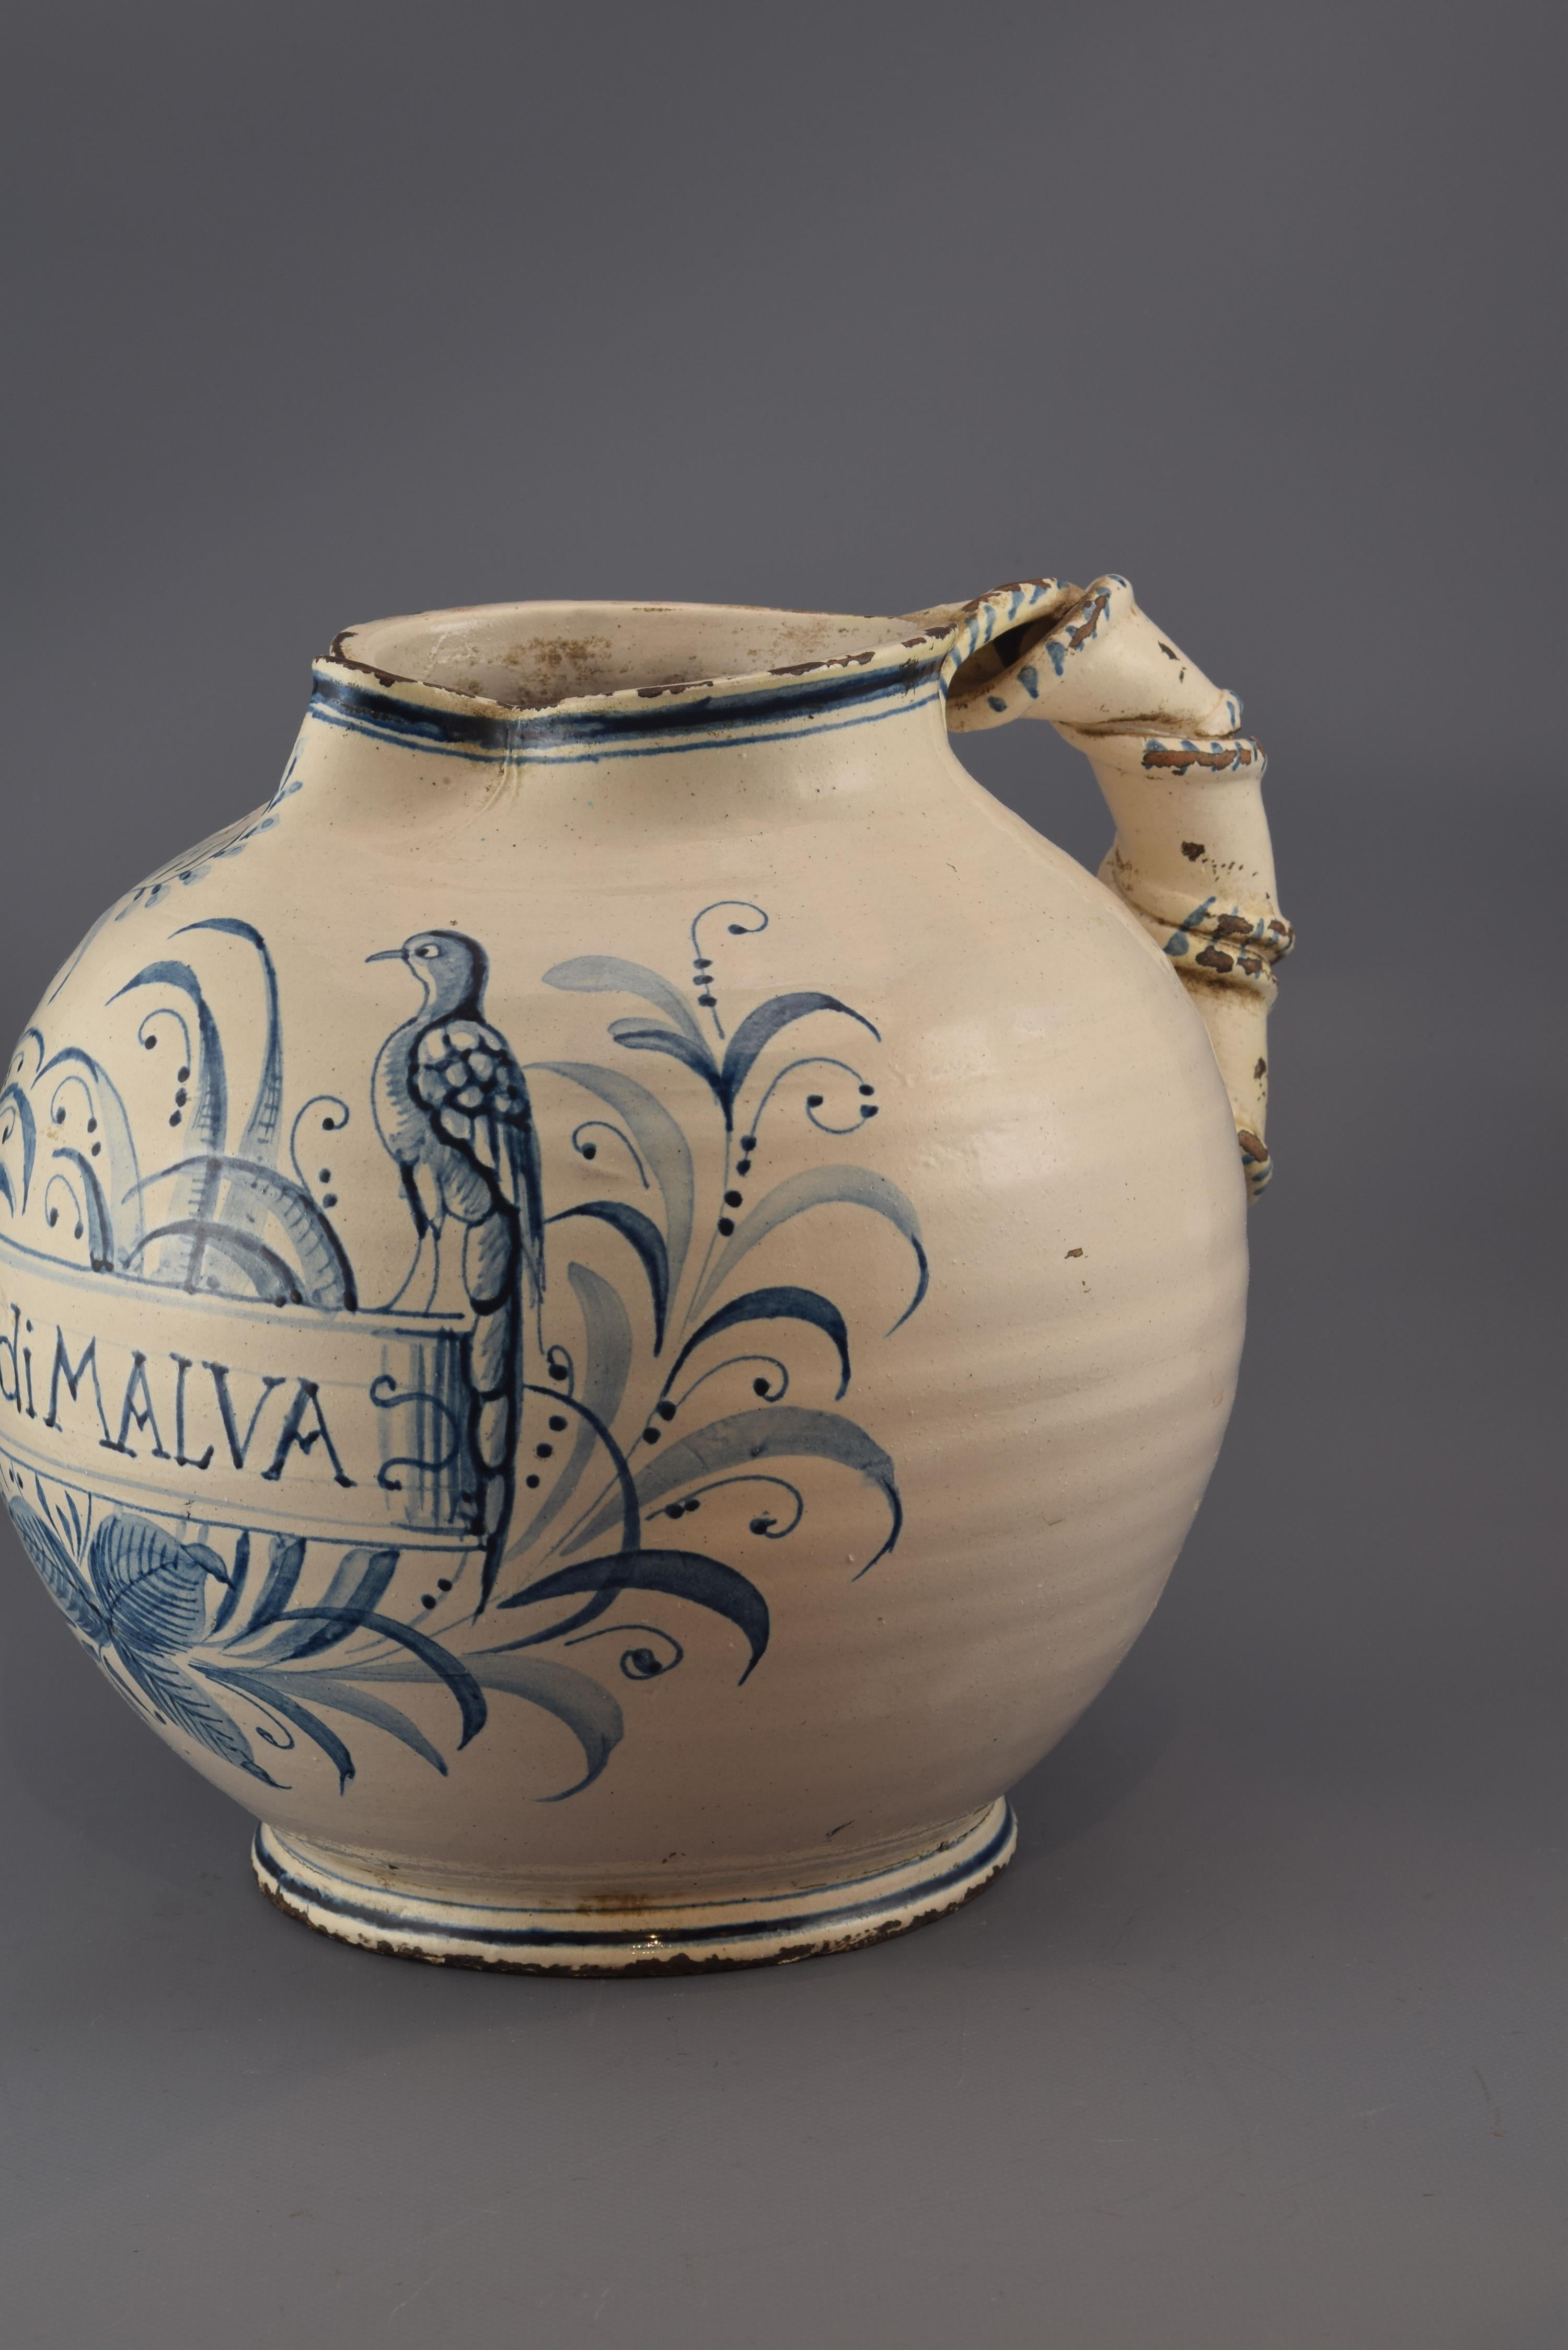 Die Dekoration von Keramik in Blautönen auf weißem Grund war in Europa bereits im 17. Jahrhundert üblich (holländische und englische Stücke, Werke von Talavera de la Reina in Spanien usw.). Im italienischen Gehäuse und in der Keramik (mit diesem